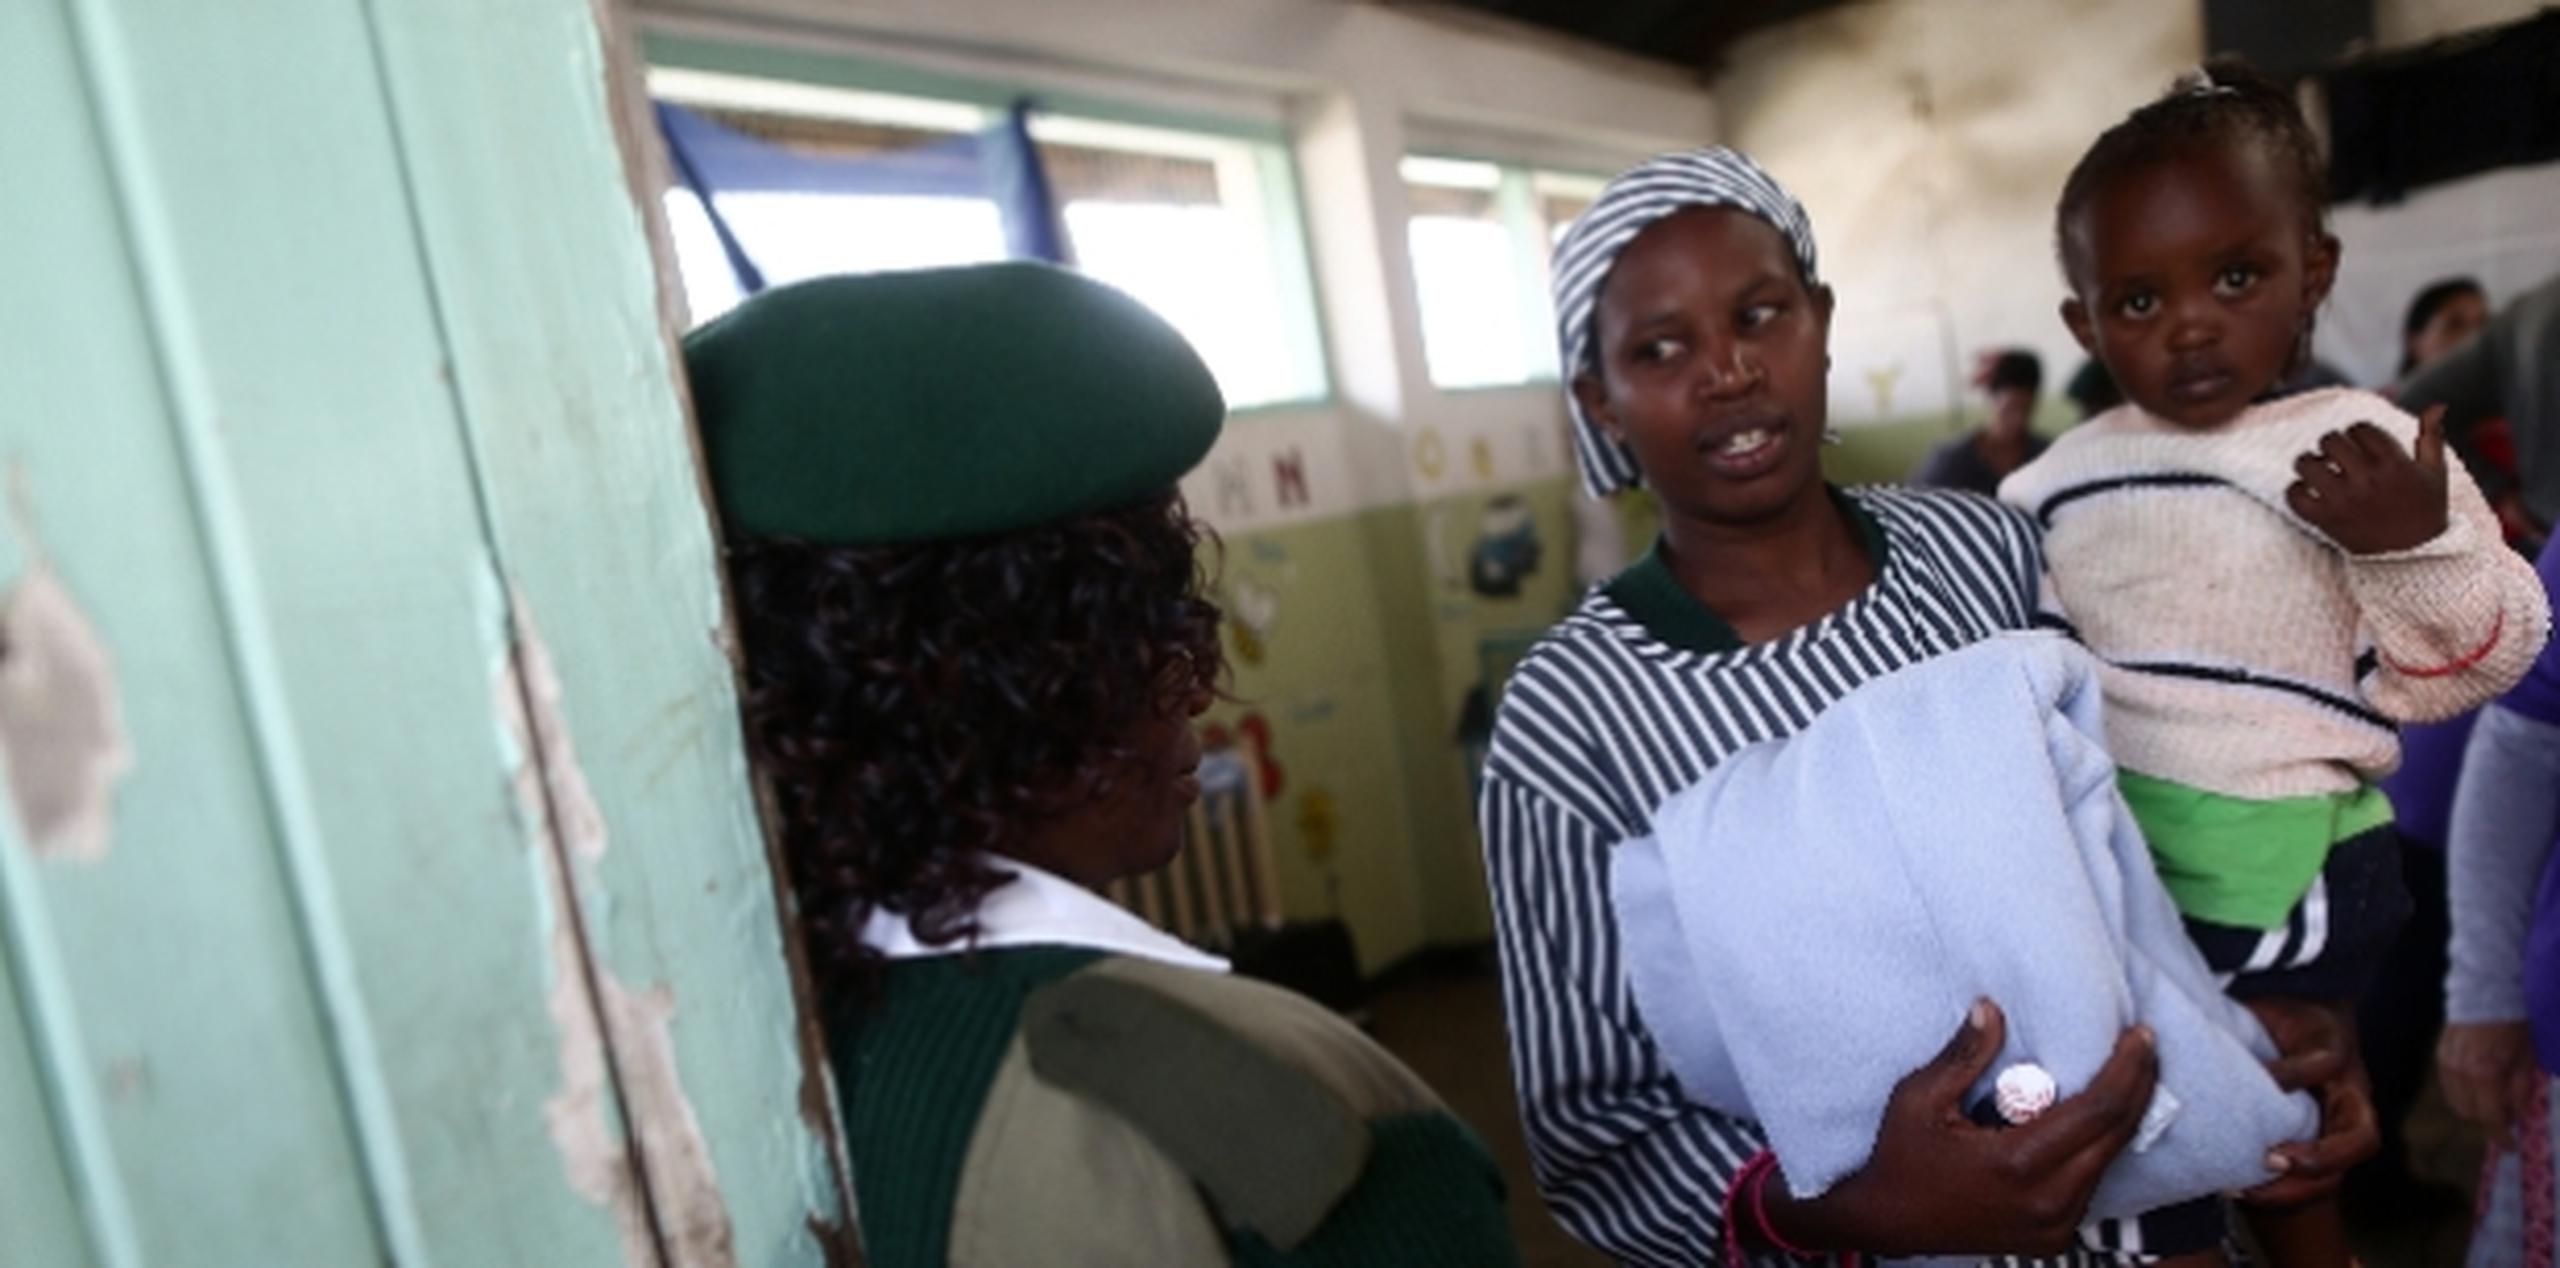 Arriba, Lilian Wairimu y Nelly Wambui reciben servicios de salud de una misión humanitaria boricua en cárcel de Nakuru, Kenia. f.araujo@gfrmedia.com